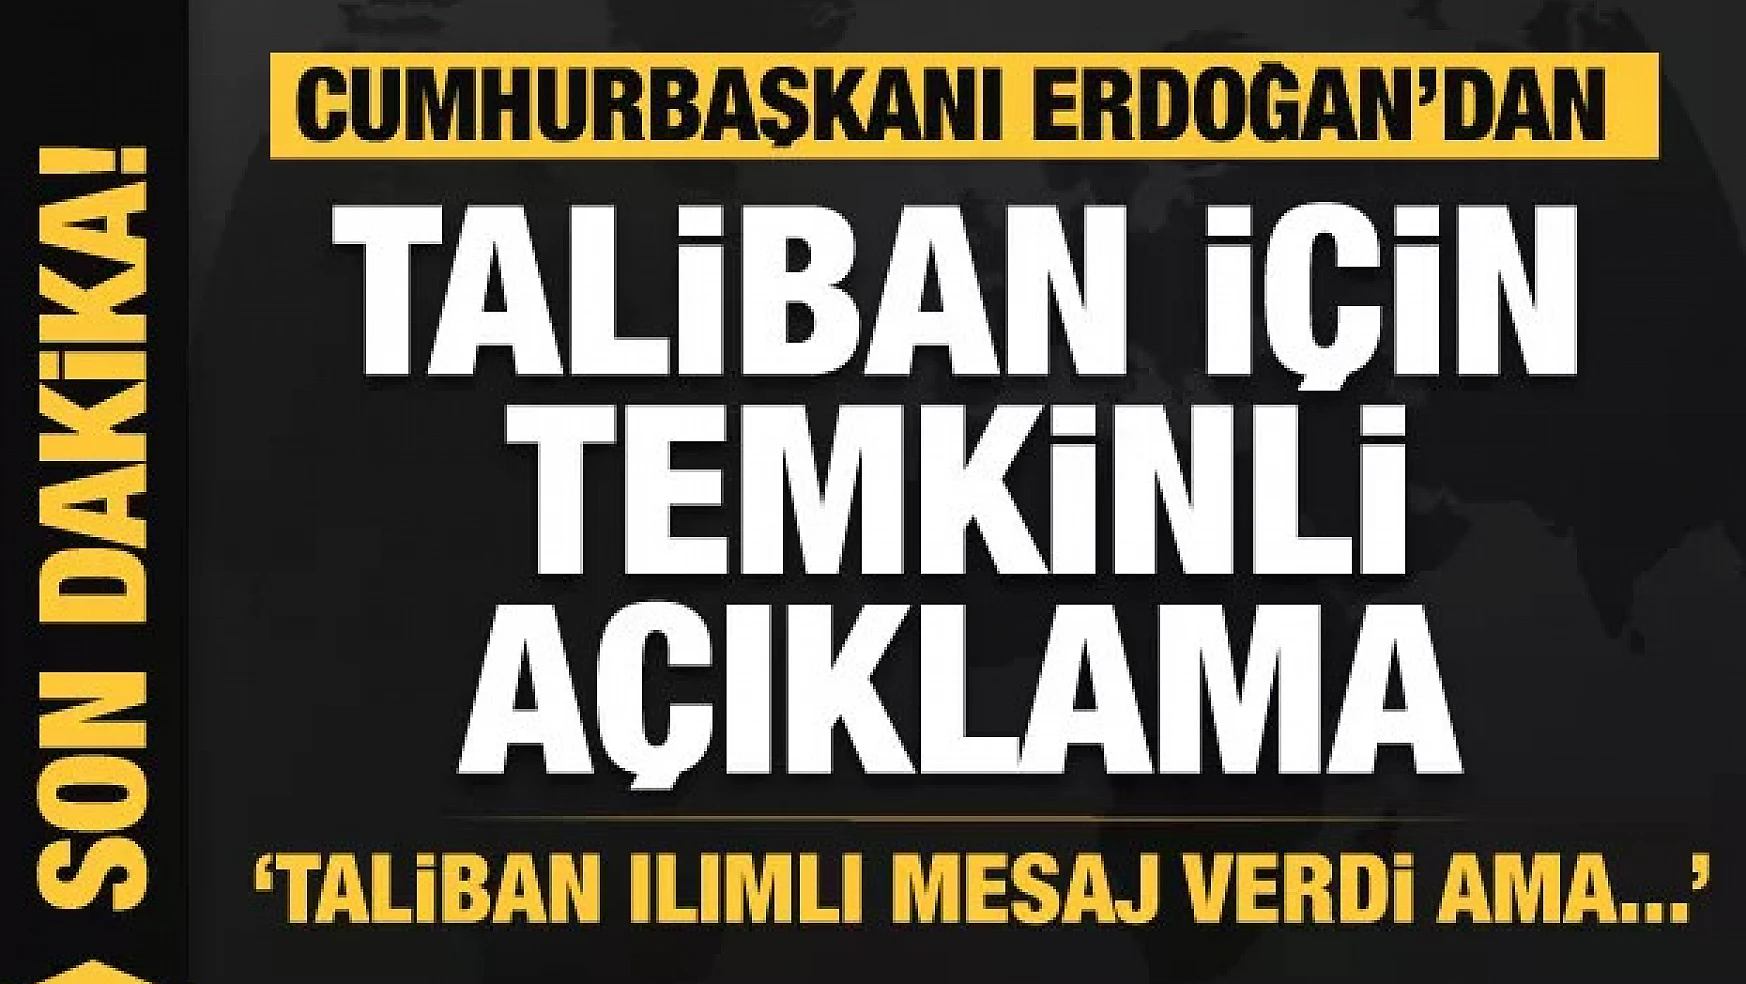 Erdoğan çok net Afganistan mesajı: Taliban ılımlı mesaj verdi ama...